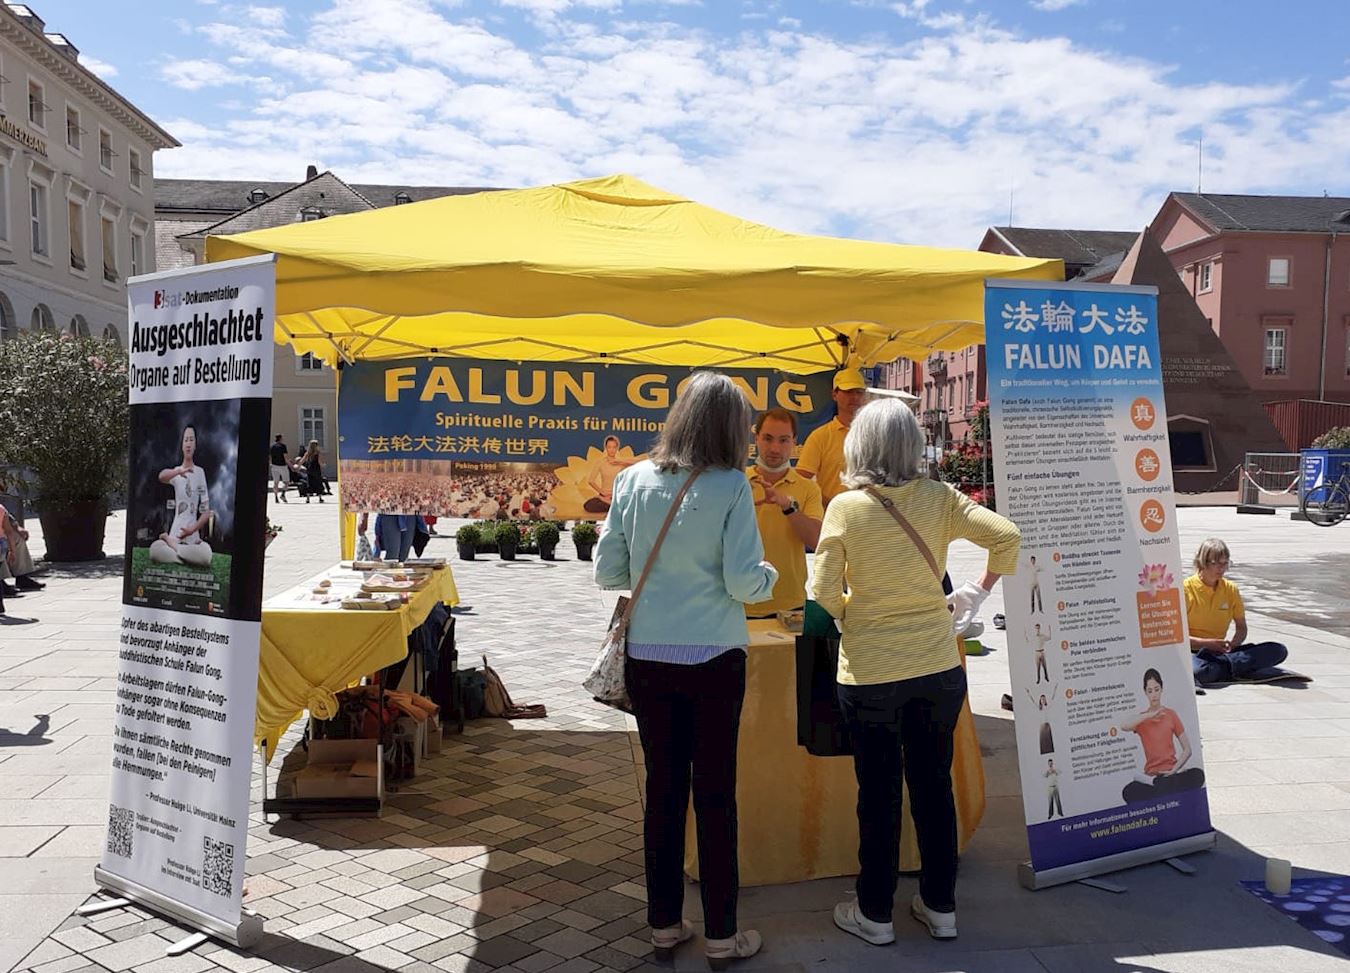 Image for article Les gens visitant le stand du Falun Dafa, en Allemagne, expriment leur espoir d’un retour aux valeurs traditionnelles